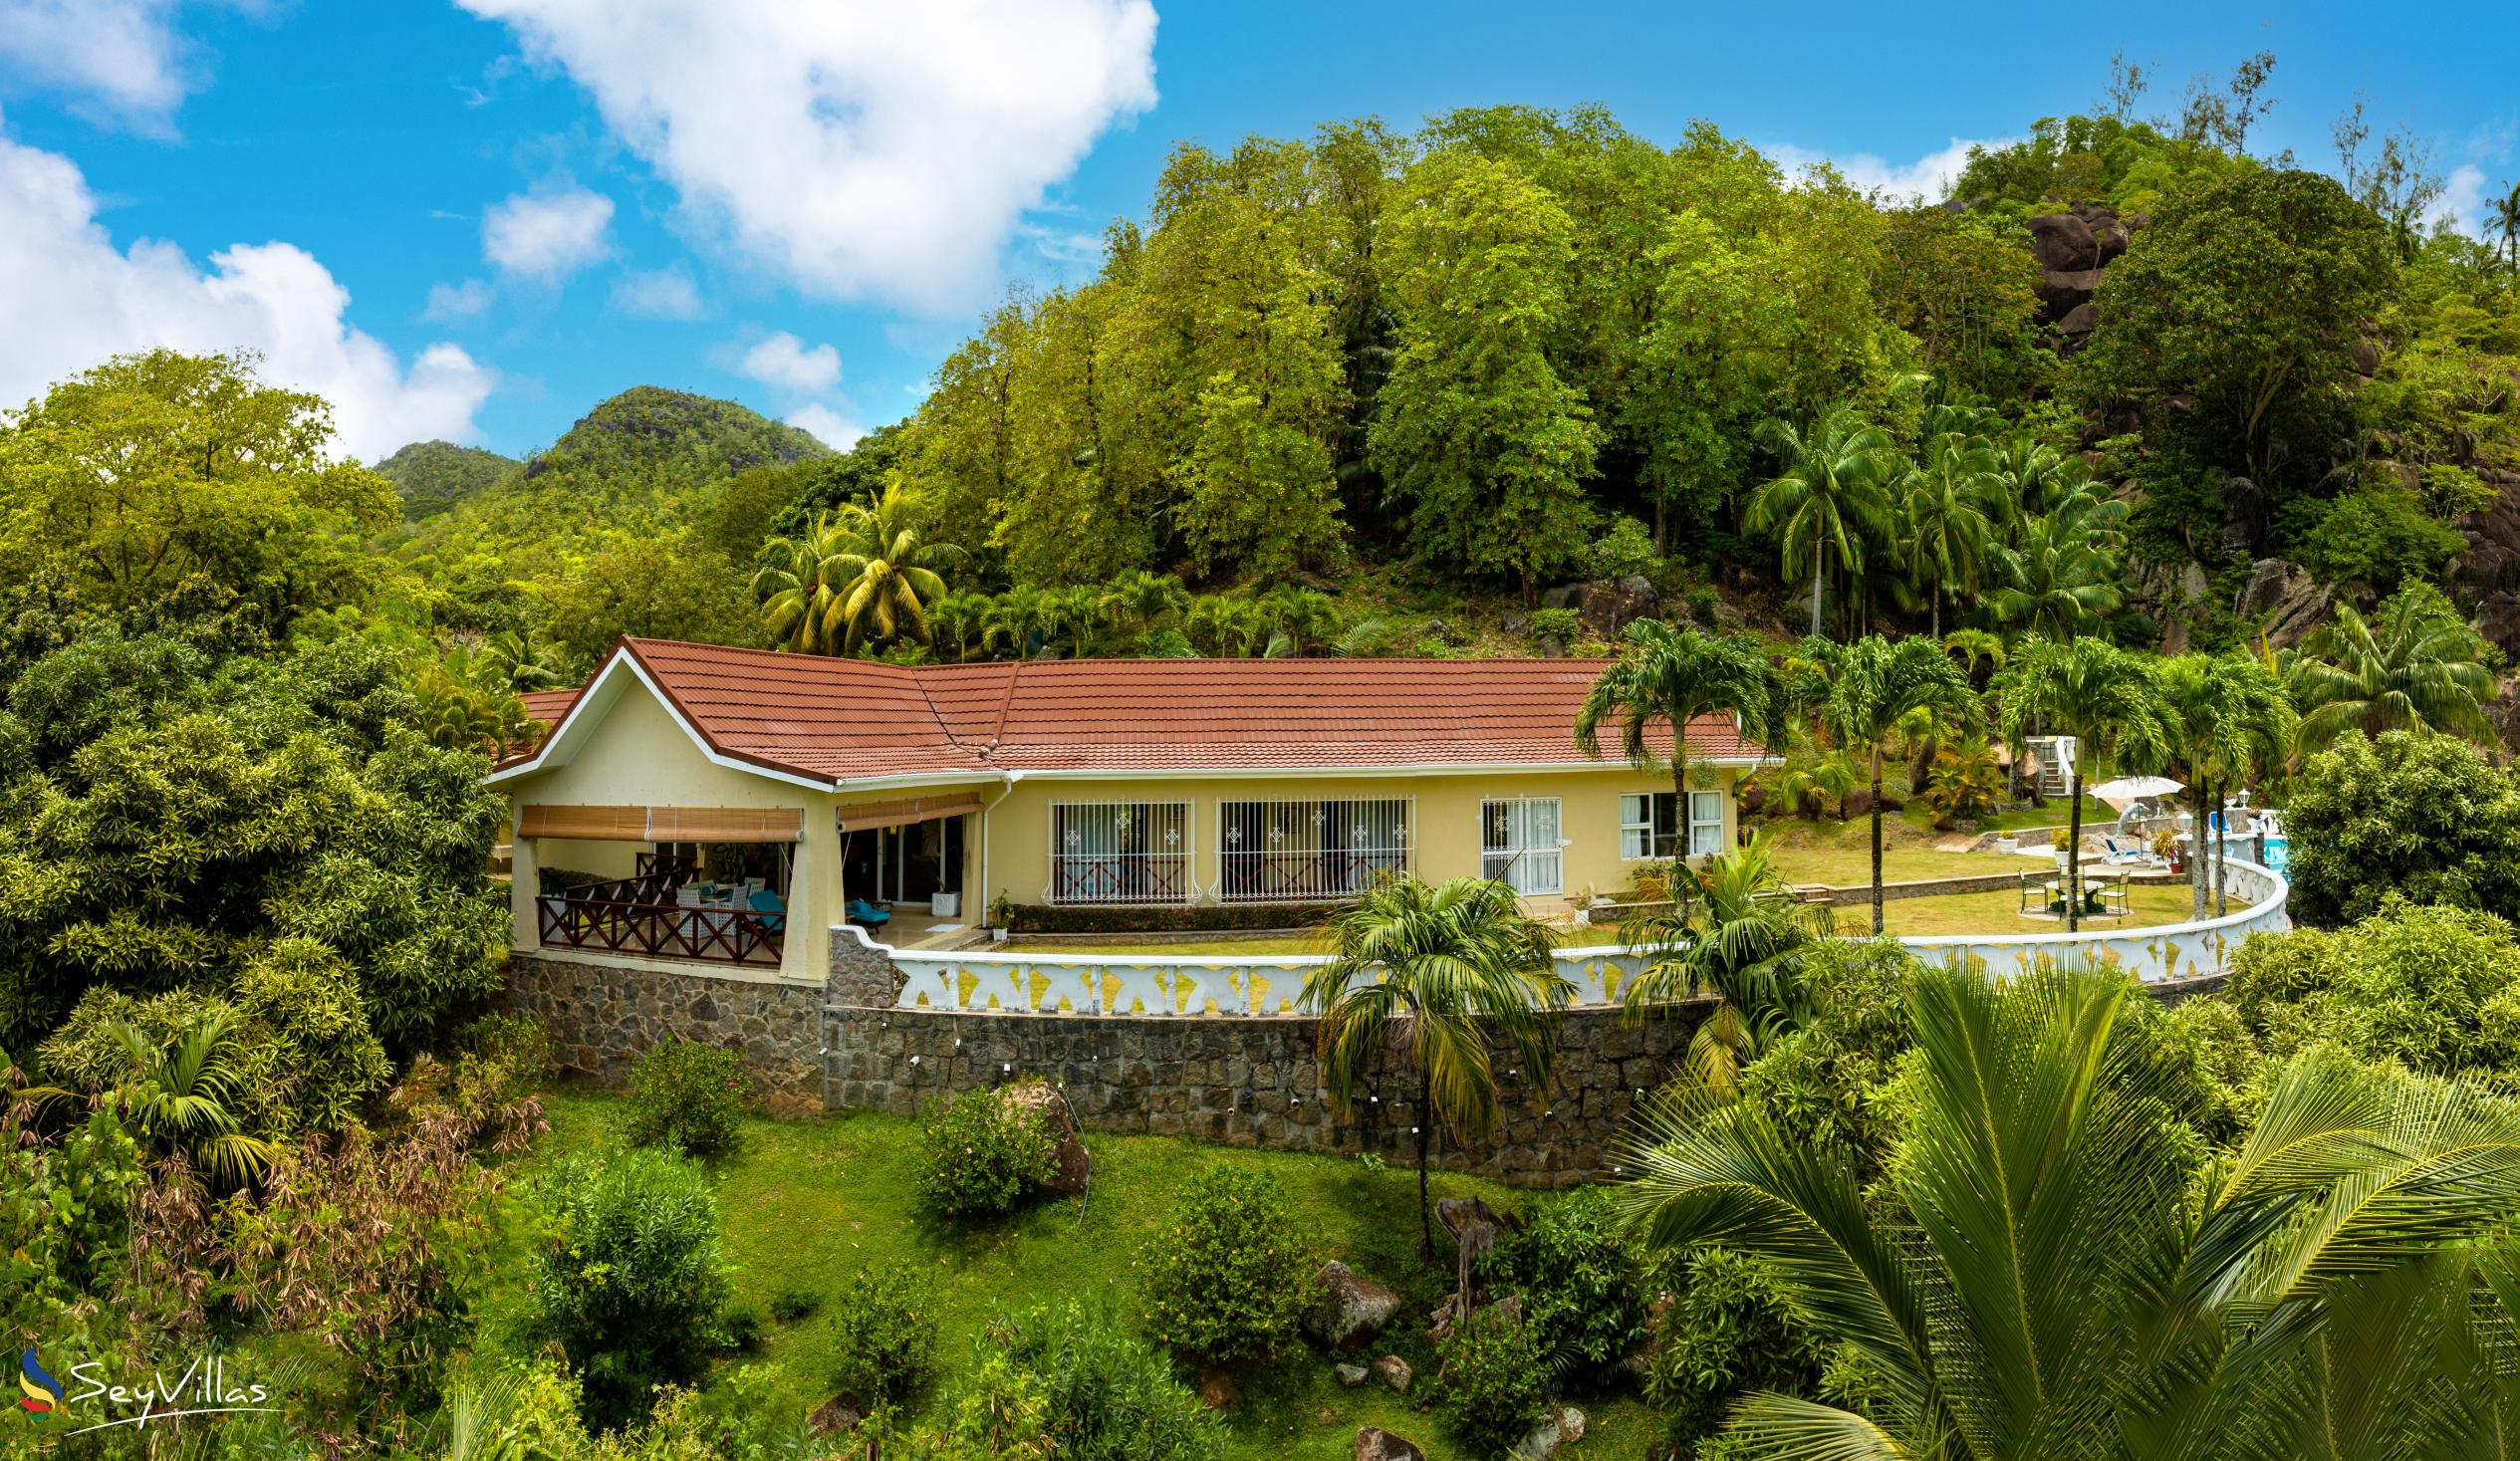 Foto 4: Villa Gazebo - Extérieur - Mahé (Seychelles)